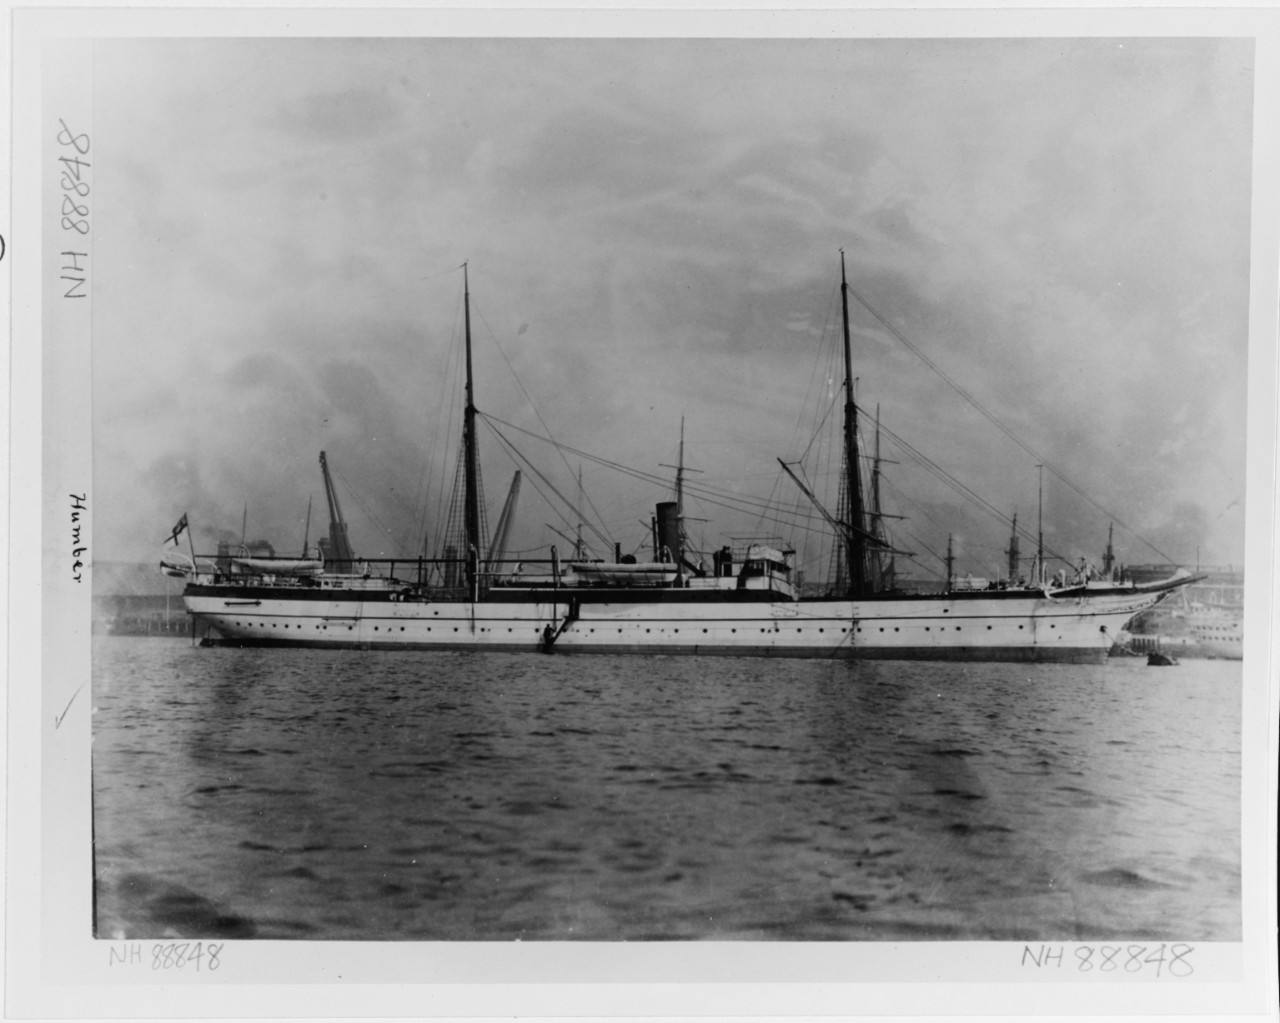 HUMBER (British Naval storeship, 1876-1907)